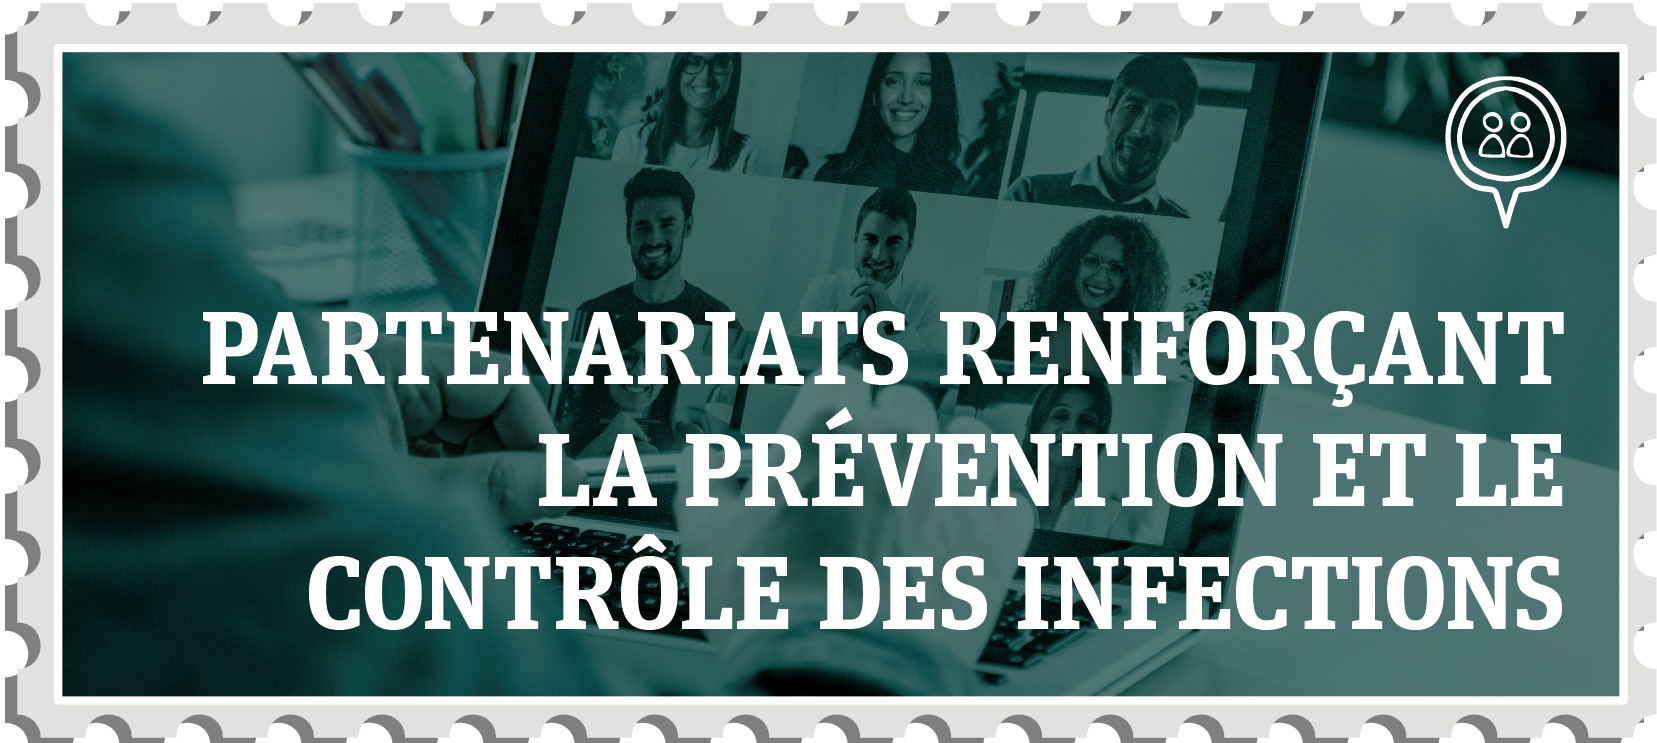 Partenariats renforçant la prévention et le contrôle des infections